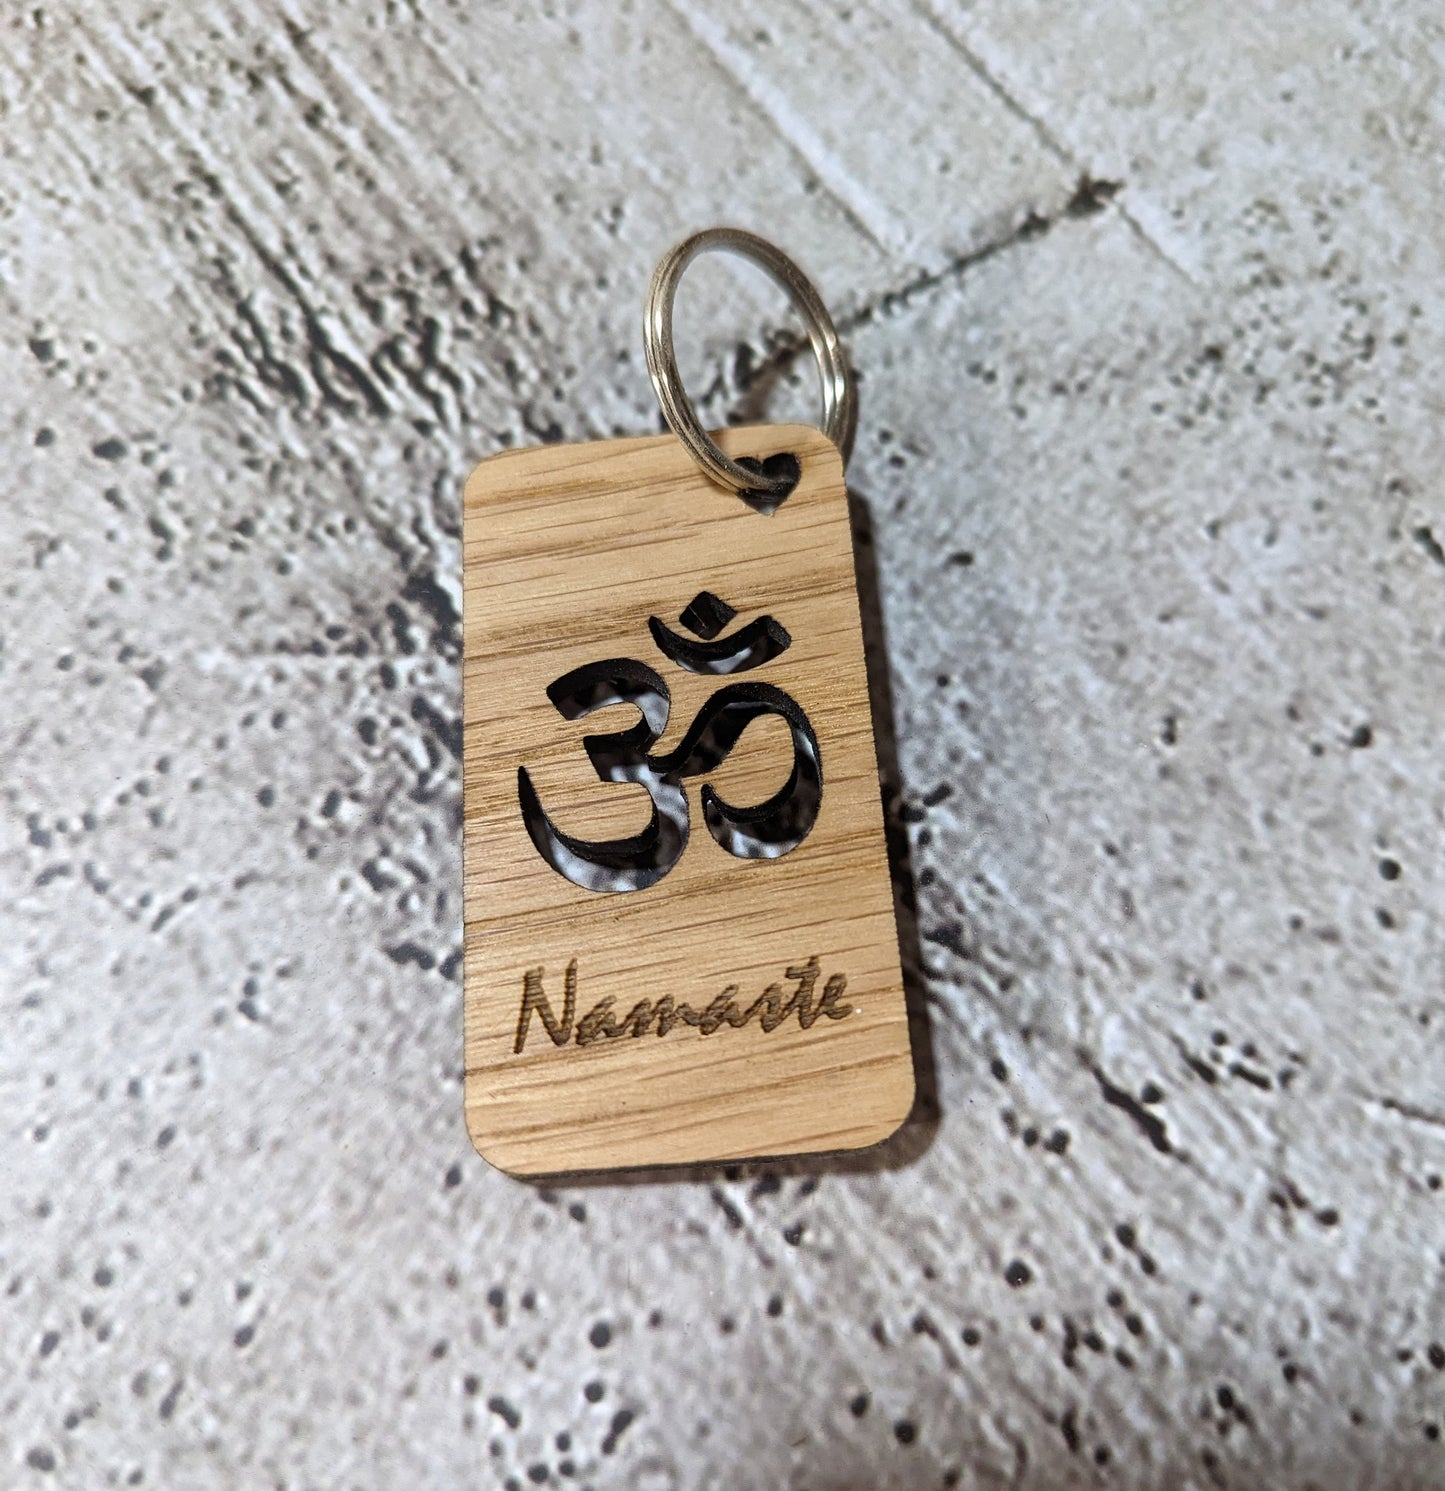 Personalised Yoga Keyrings, Engraved Wooden Lotus Flower & Namaste Keyrings